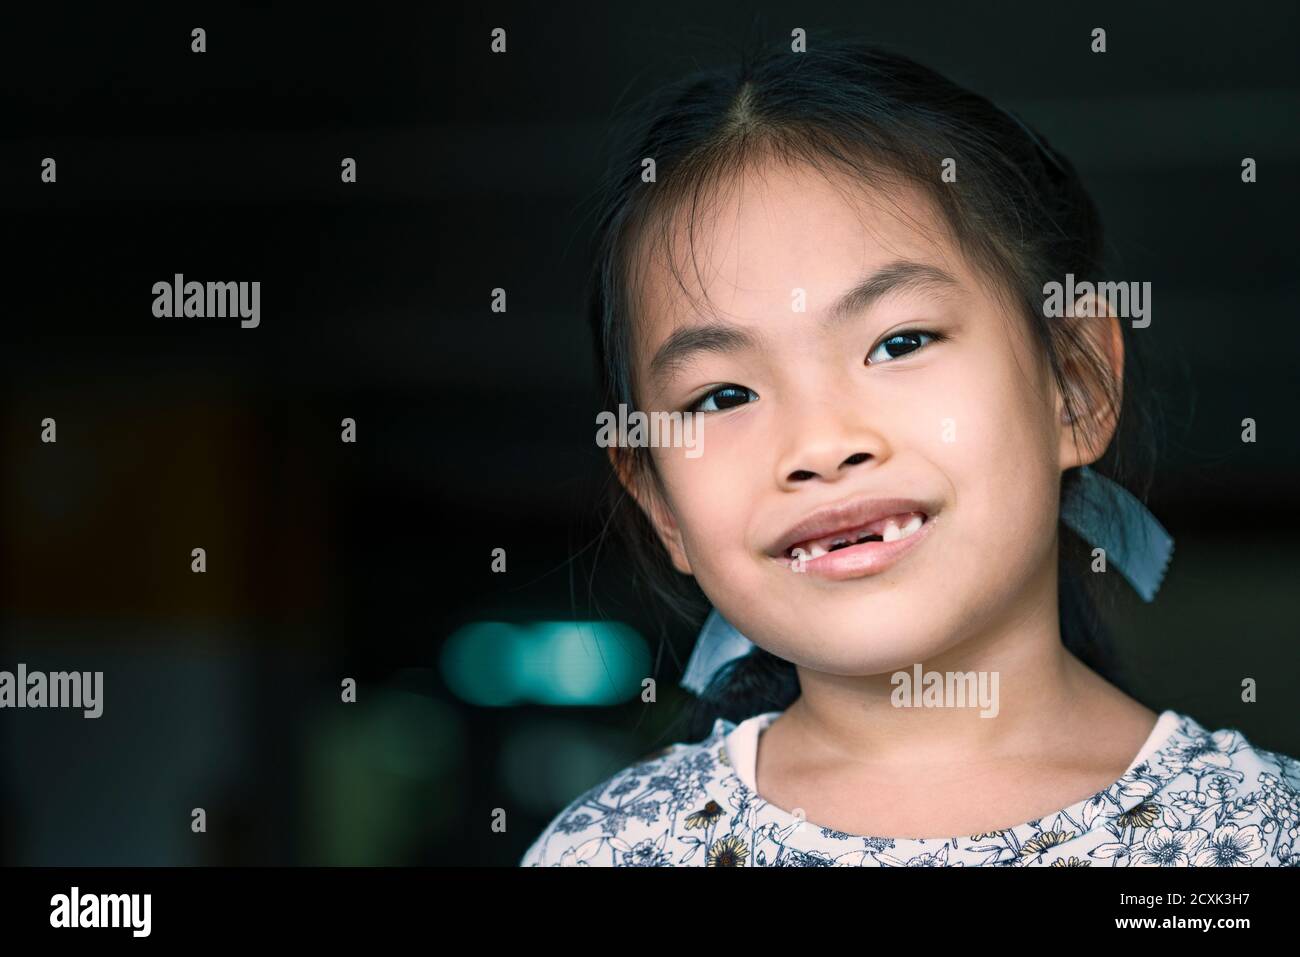 Bambino asiatico ragazza mancante dente anteriore, faccia sorridente. Primo piano su cute faccia, spazio per la copia e la progettazione. Occhi che guardano la fotocamera. Foto Stock